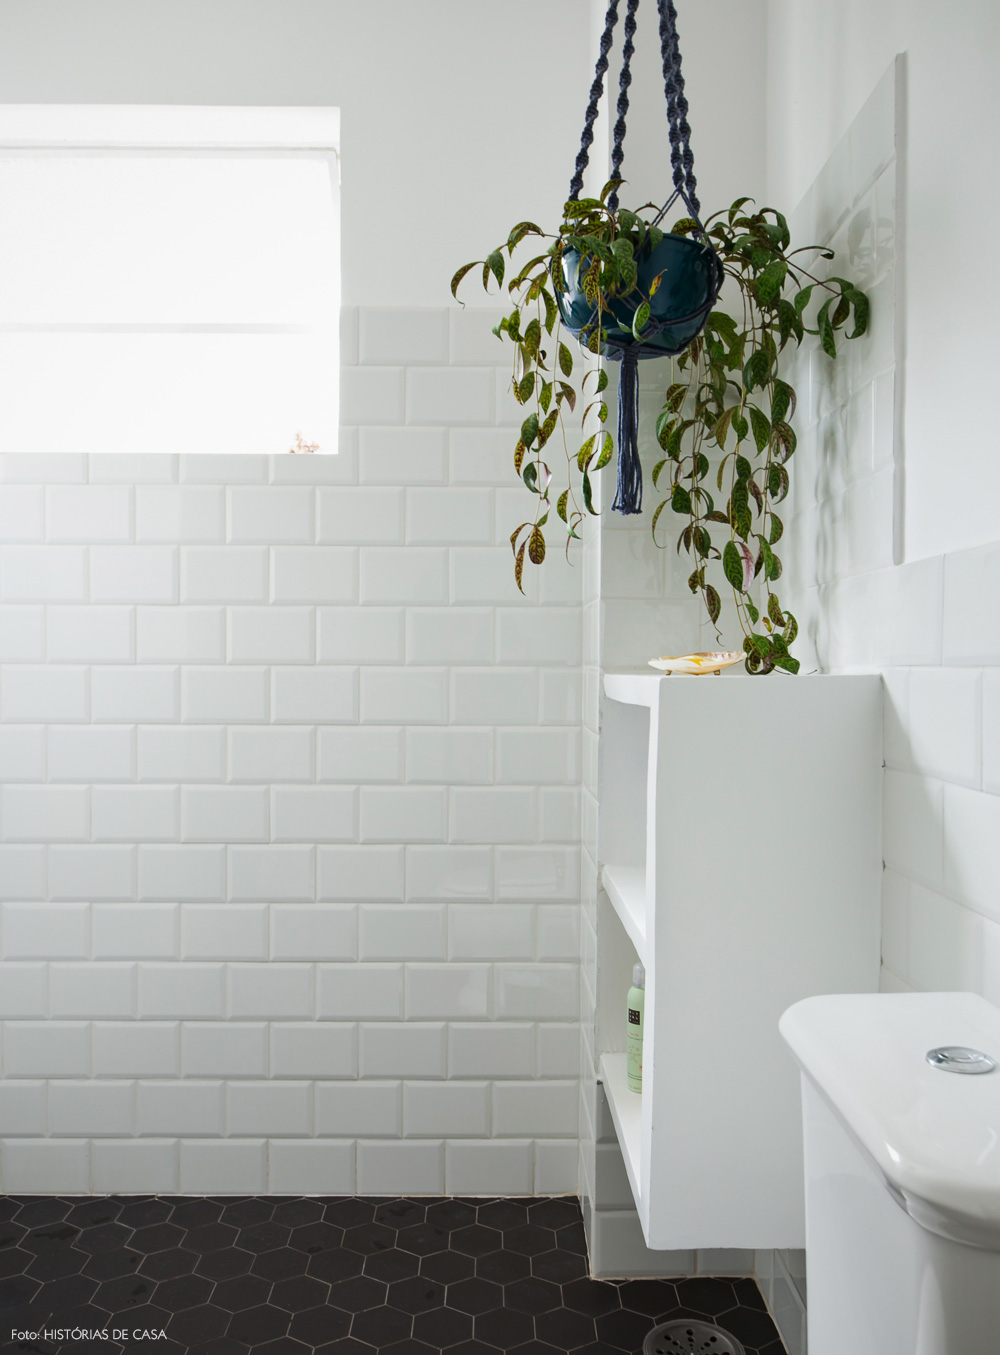 39-decoracao-banheiro-subway-tiles-piso-hexagonal-macrame-plantas